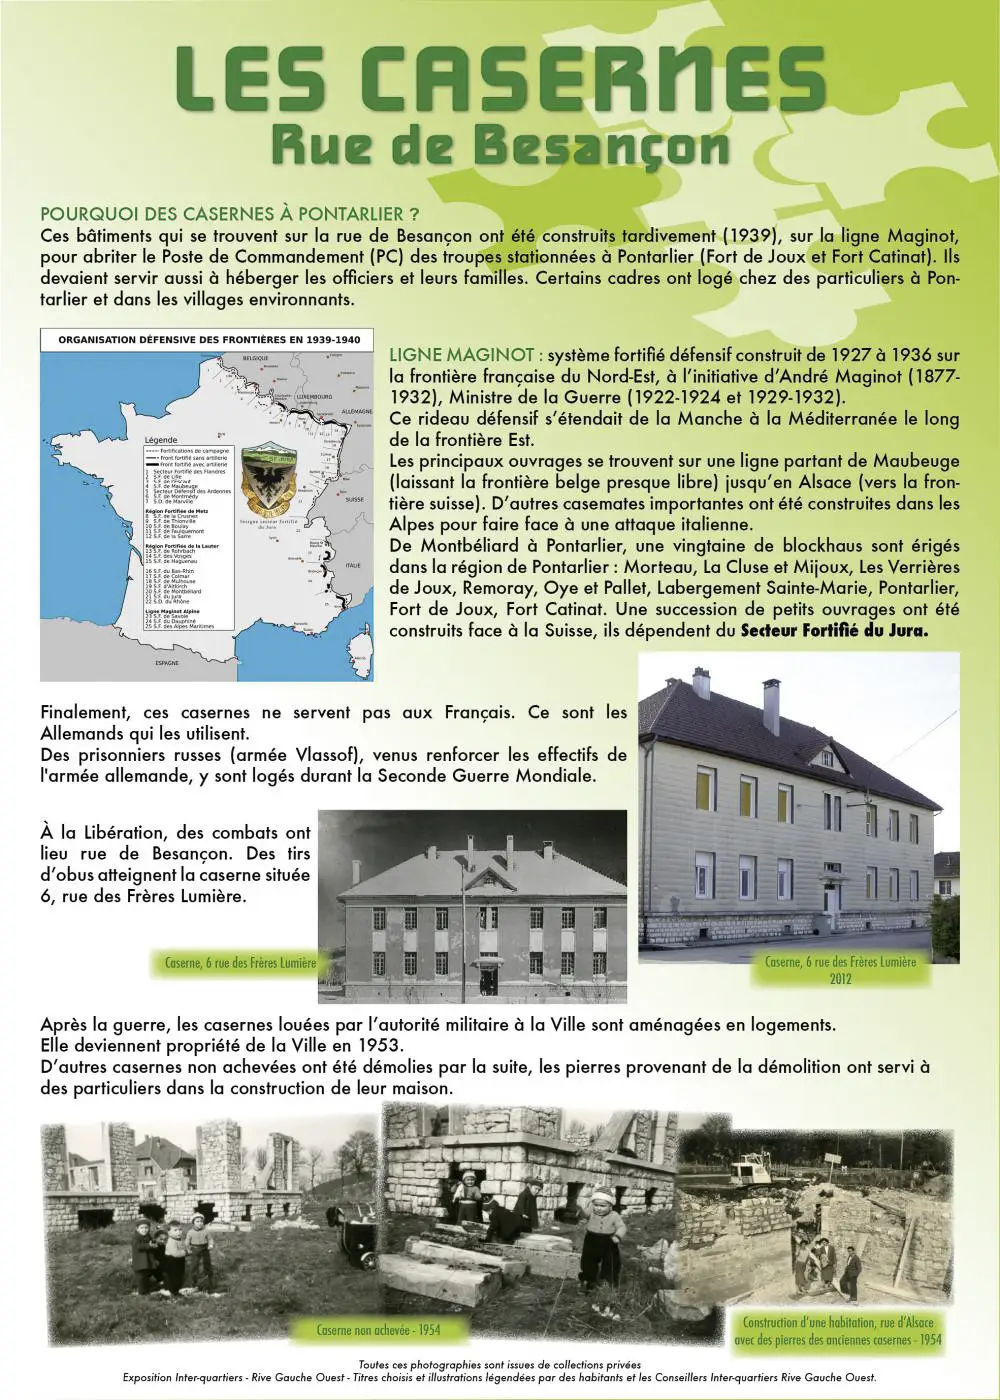 Ligne Maginot - PONTARLIER - (Casernement) - Panneau qui avait été fait lors d'une exposition organisée par les archives sur la vie du quartier.